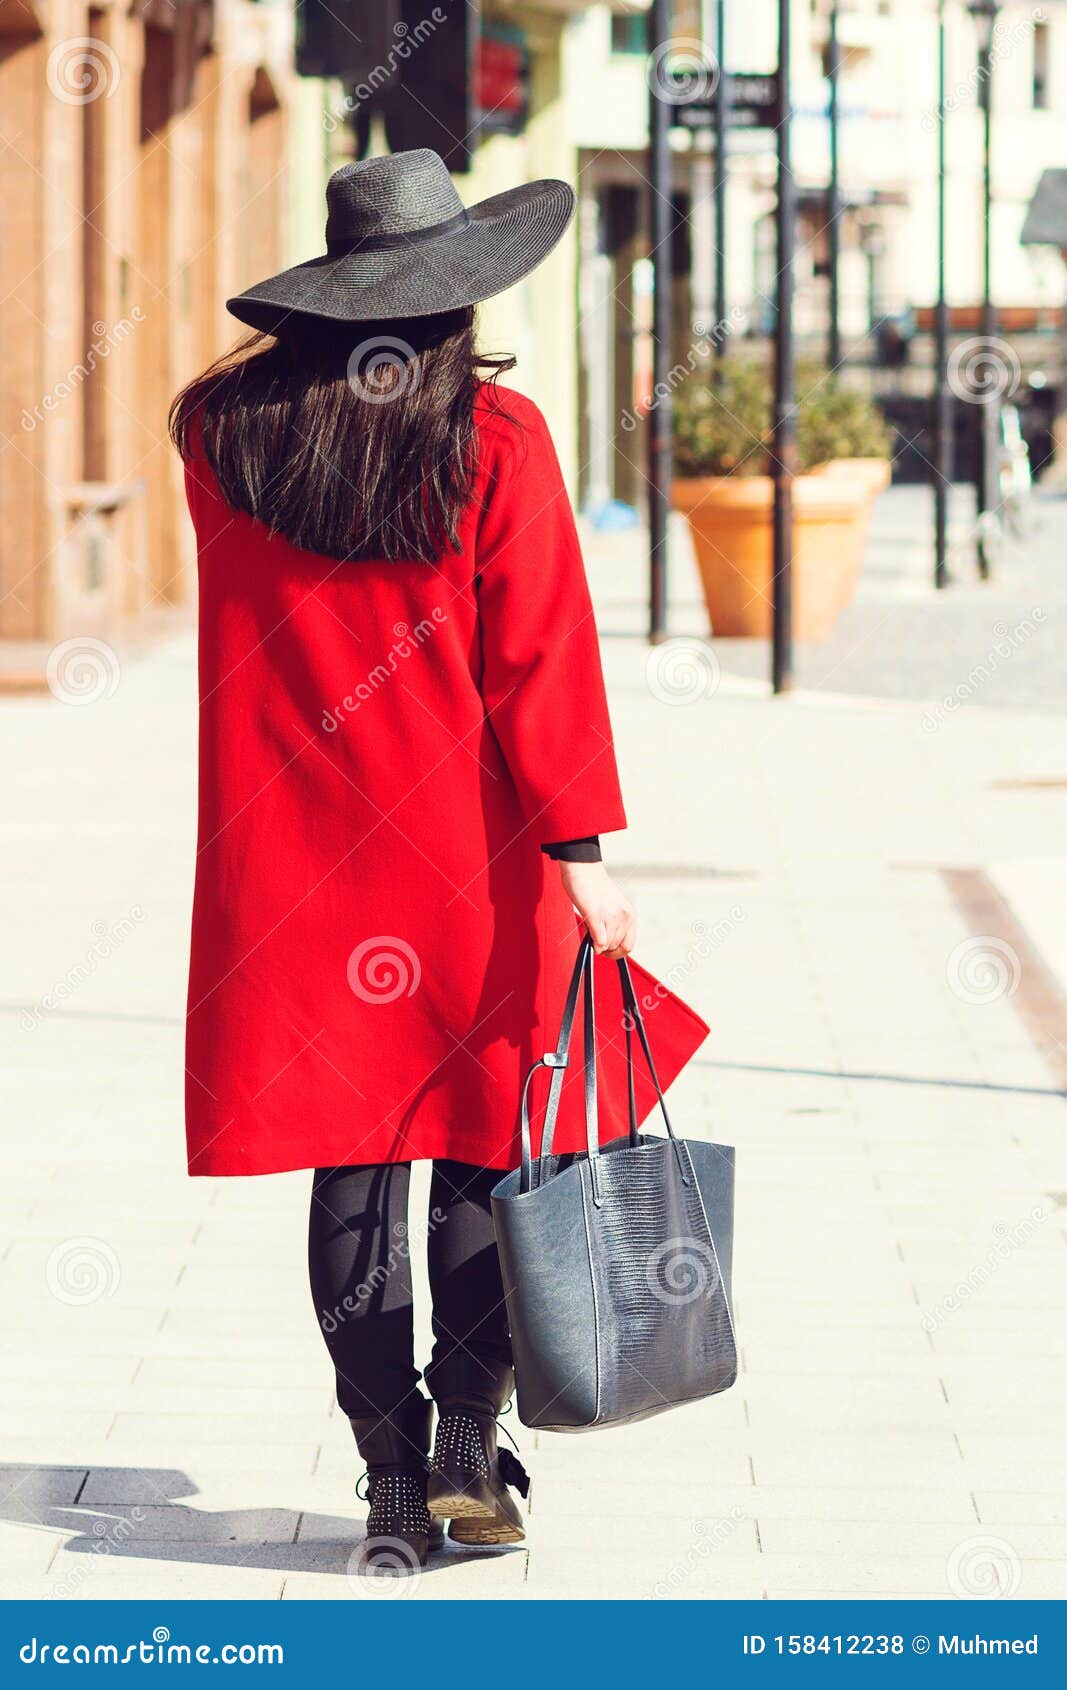 Chica Elegante Abrigo Rojo Y Sombrero Negro Mujer Feliz Después De La Venta De Compras Moda De Mujer Mujer De Moda En Un Pase Foto de archivo - de persona,